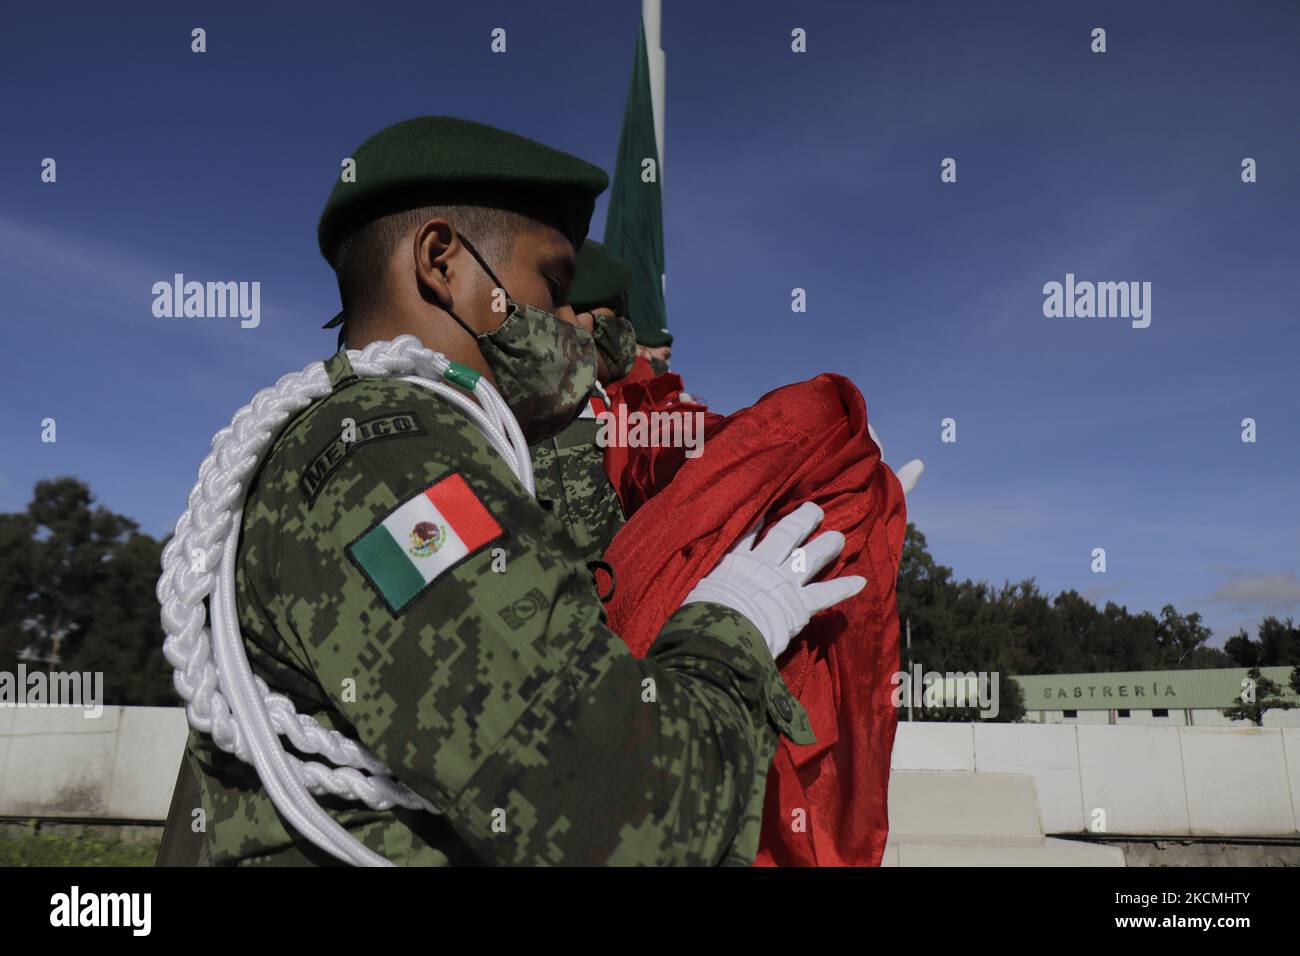 Mitglieder des Sekretariats der Nationalen Verteidigung (SEDENA) senken die mexikanische Flagge auf der Esplanade der Bekleidungs- und Ausrüstungsfabrik El Vergel Iztapalapa, Mexiko-Stadt, während des Gesundheitsnotfalls COVID-19 und der gelben epidemiologischen Ampel in der Hauptstadt. (Foto von Gerardo Vieyra/NurPhoto) Stockfoto